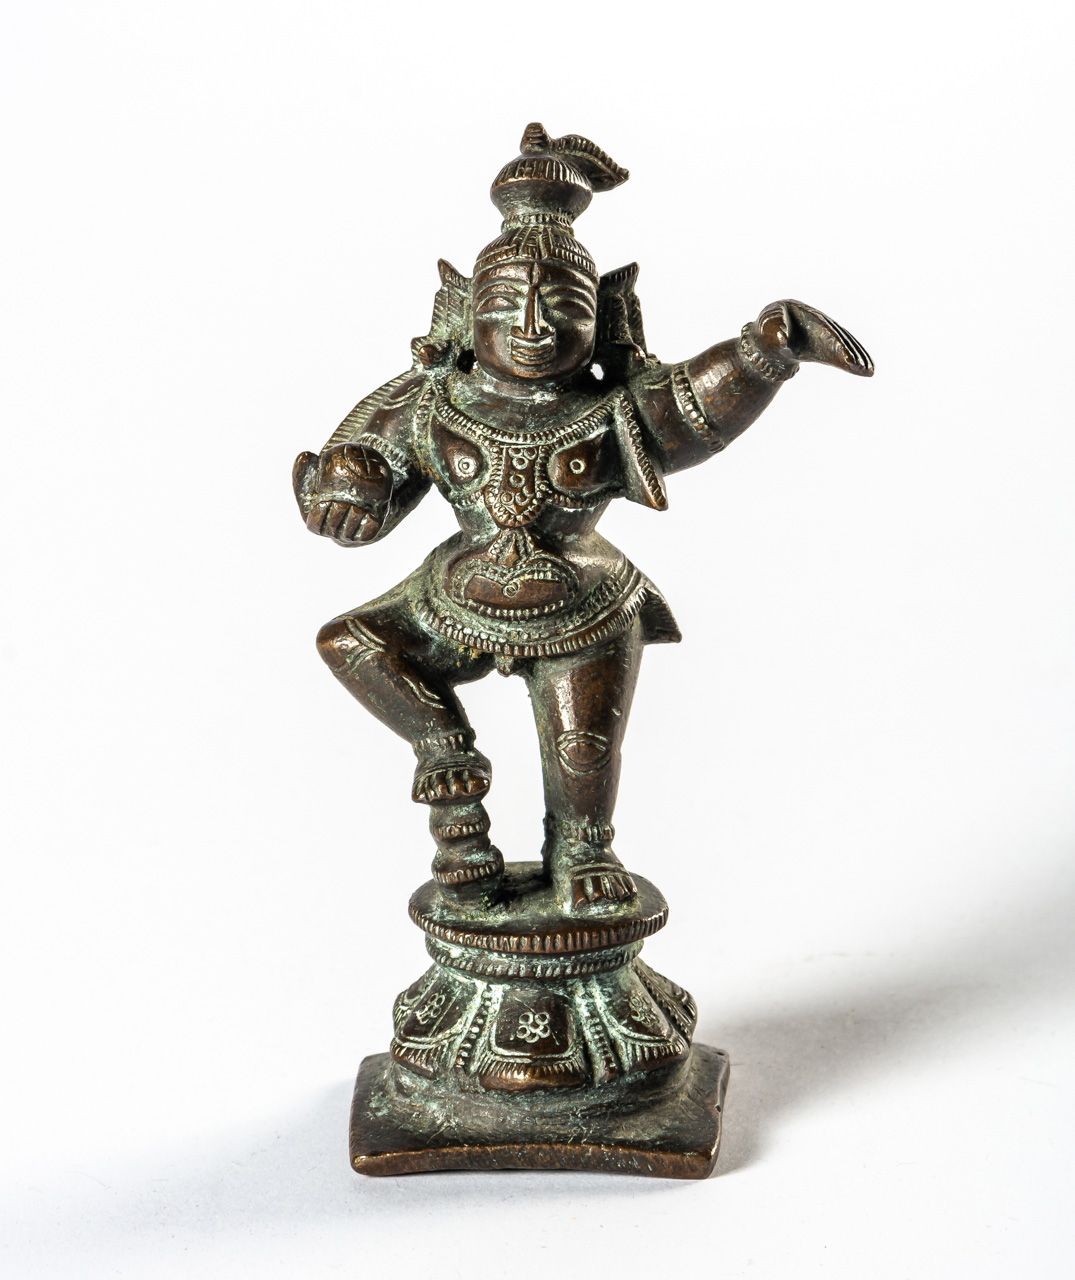 KRISHNA India, bronce, probablemente alrededor de 1900

11 cm de altura





UNA&hellip;